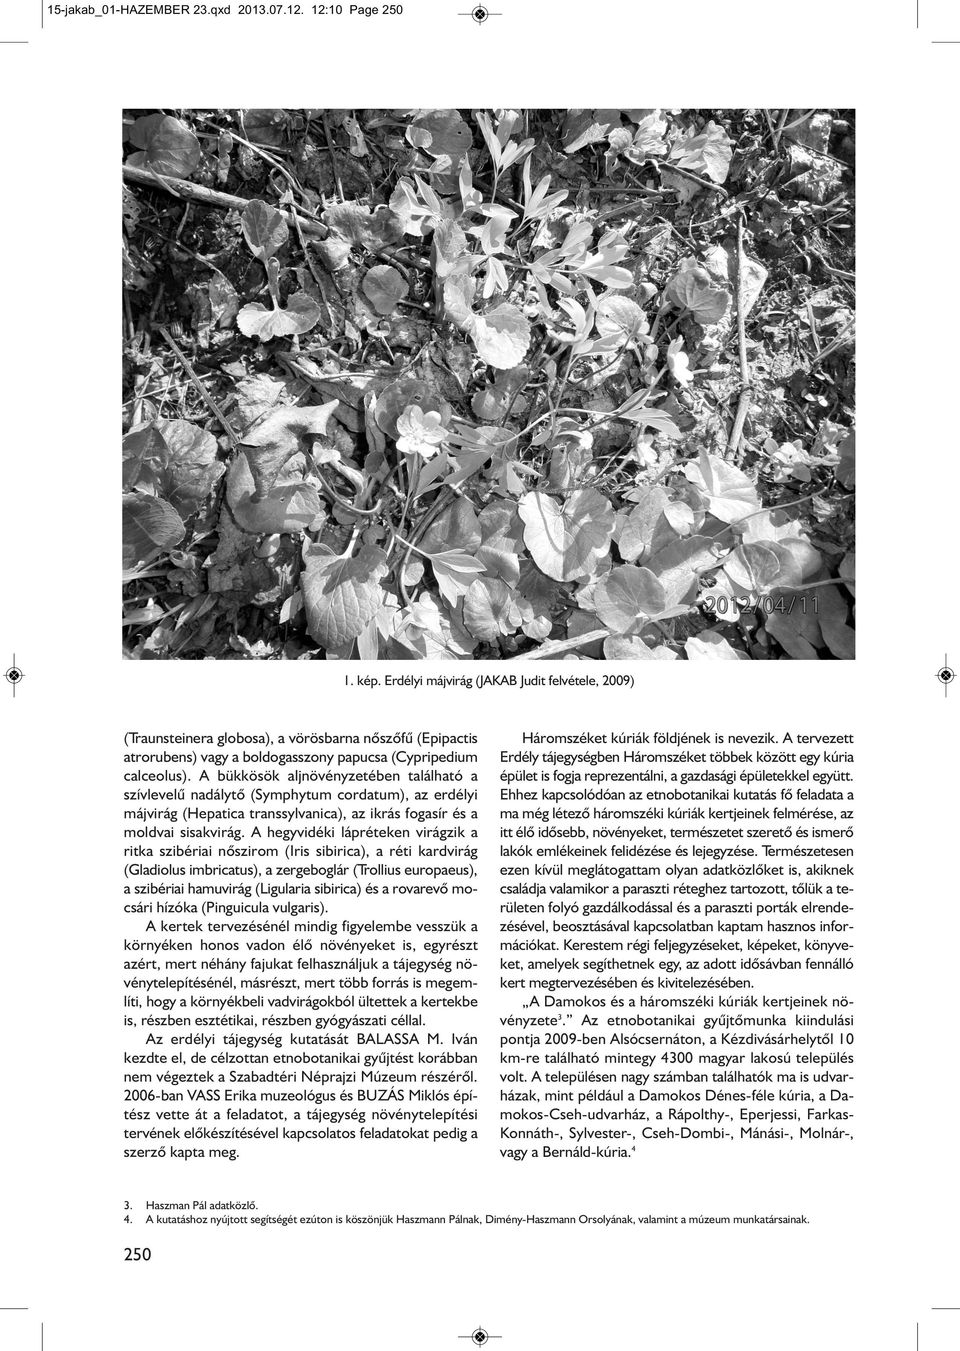 A bükkösök aljnövényzetében található a szívlevelû nadálytõ (Symphytum cordatum), az erdélyi májvirág (Hepatica transsylvanica), az ikrás fogasír és a moldvai sisakvirág.